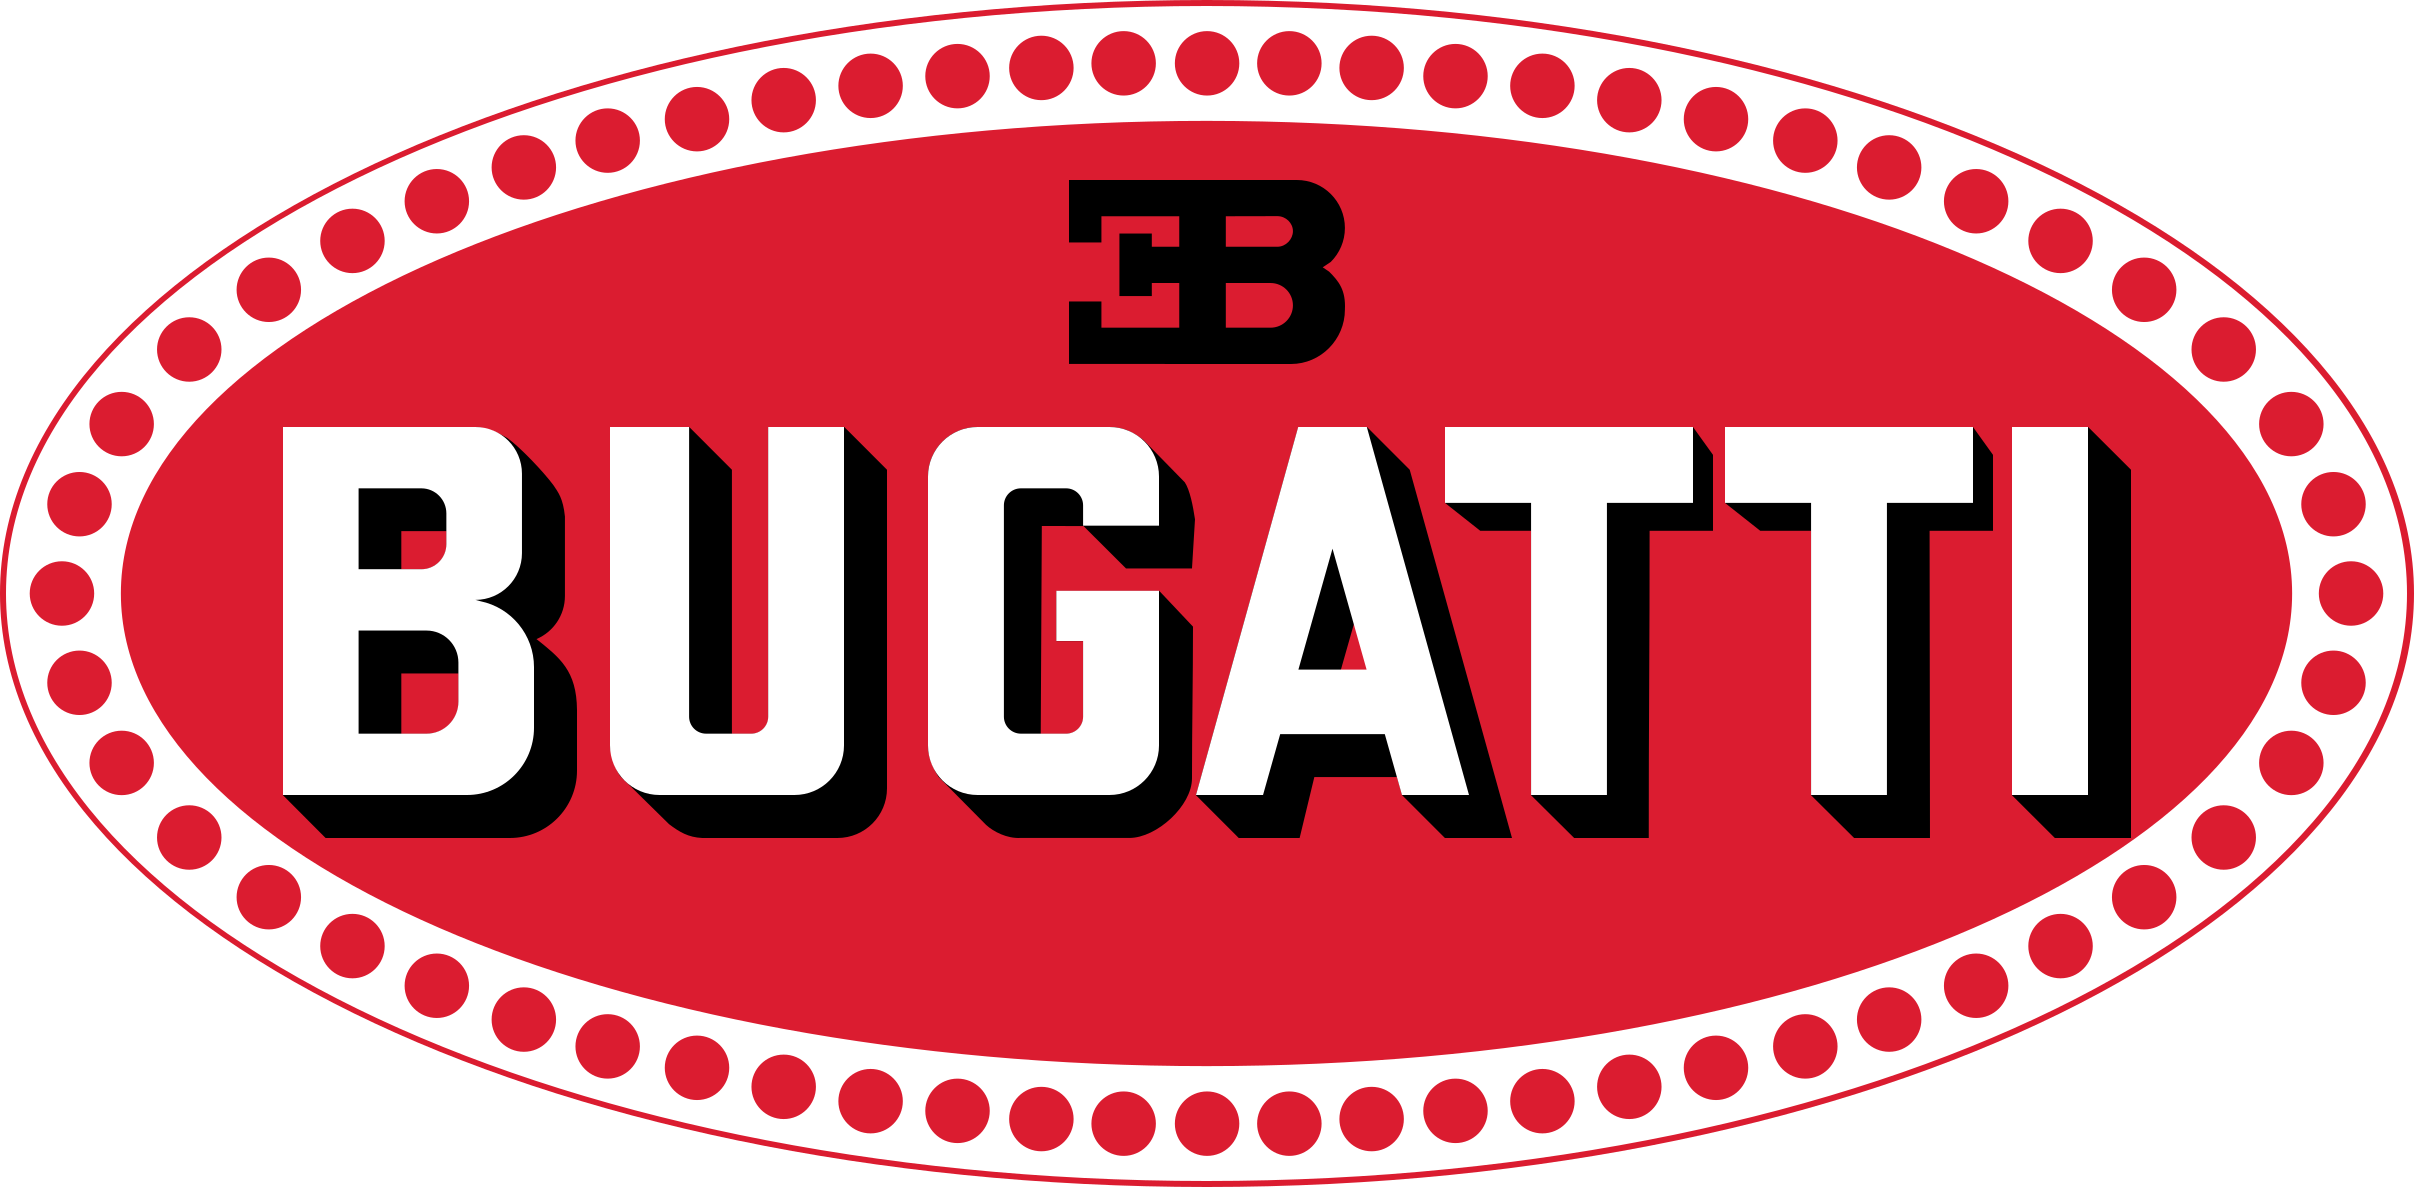 Ki alapította a Bugatti céget?